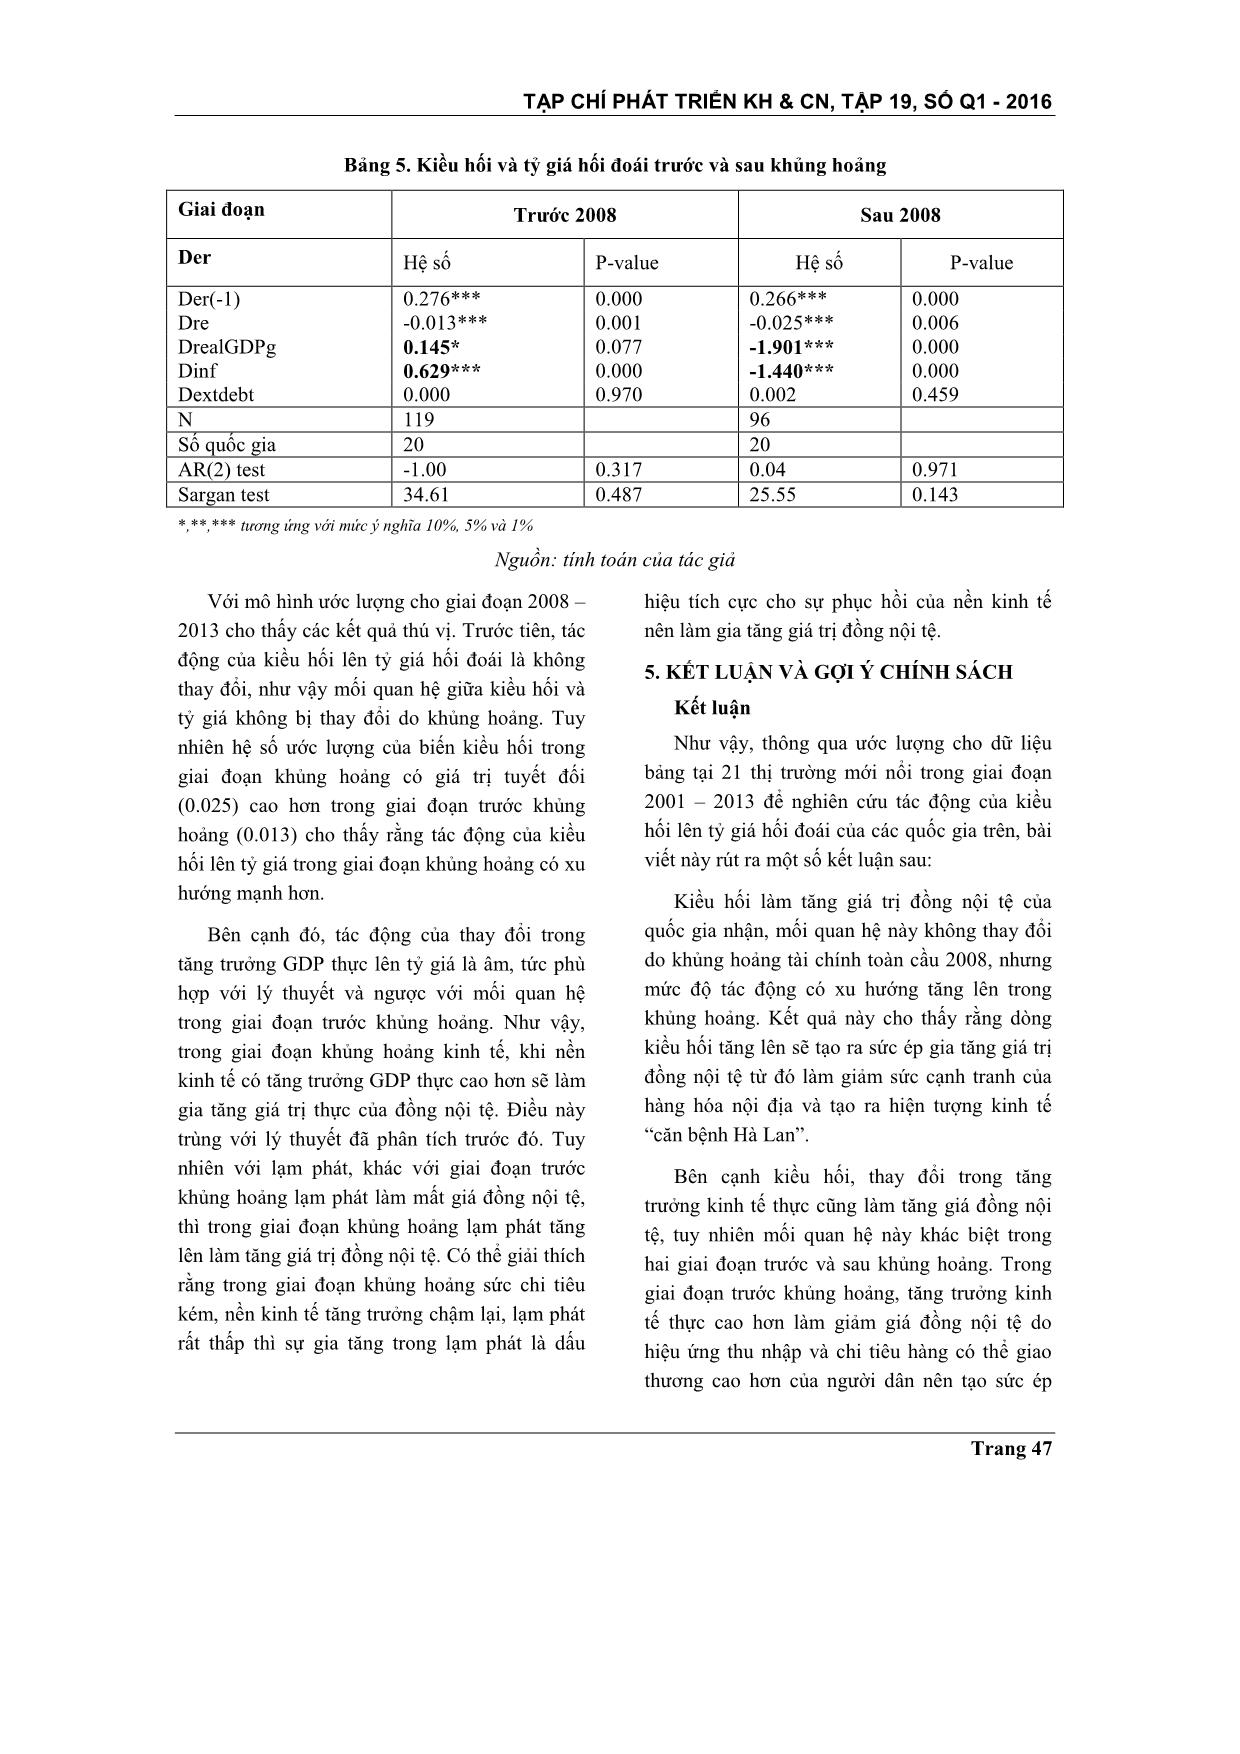 Kiều hối và tỷ giá hối đoái: Nghiên cứu thực nghiệm tại các thị trường mới nổi trang 9